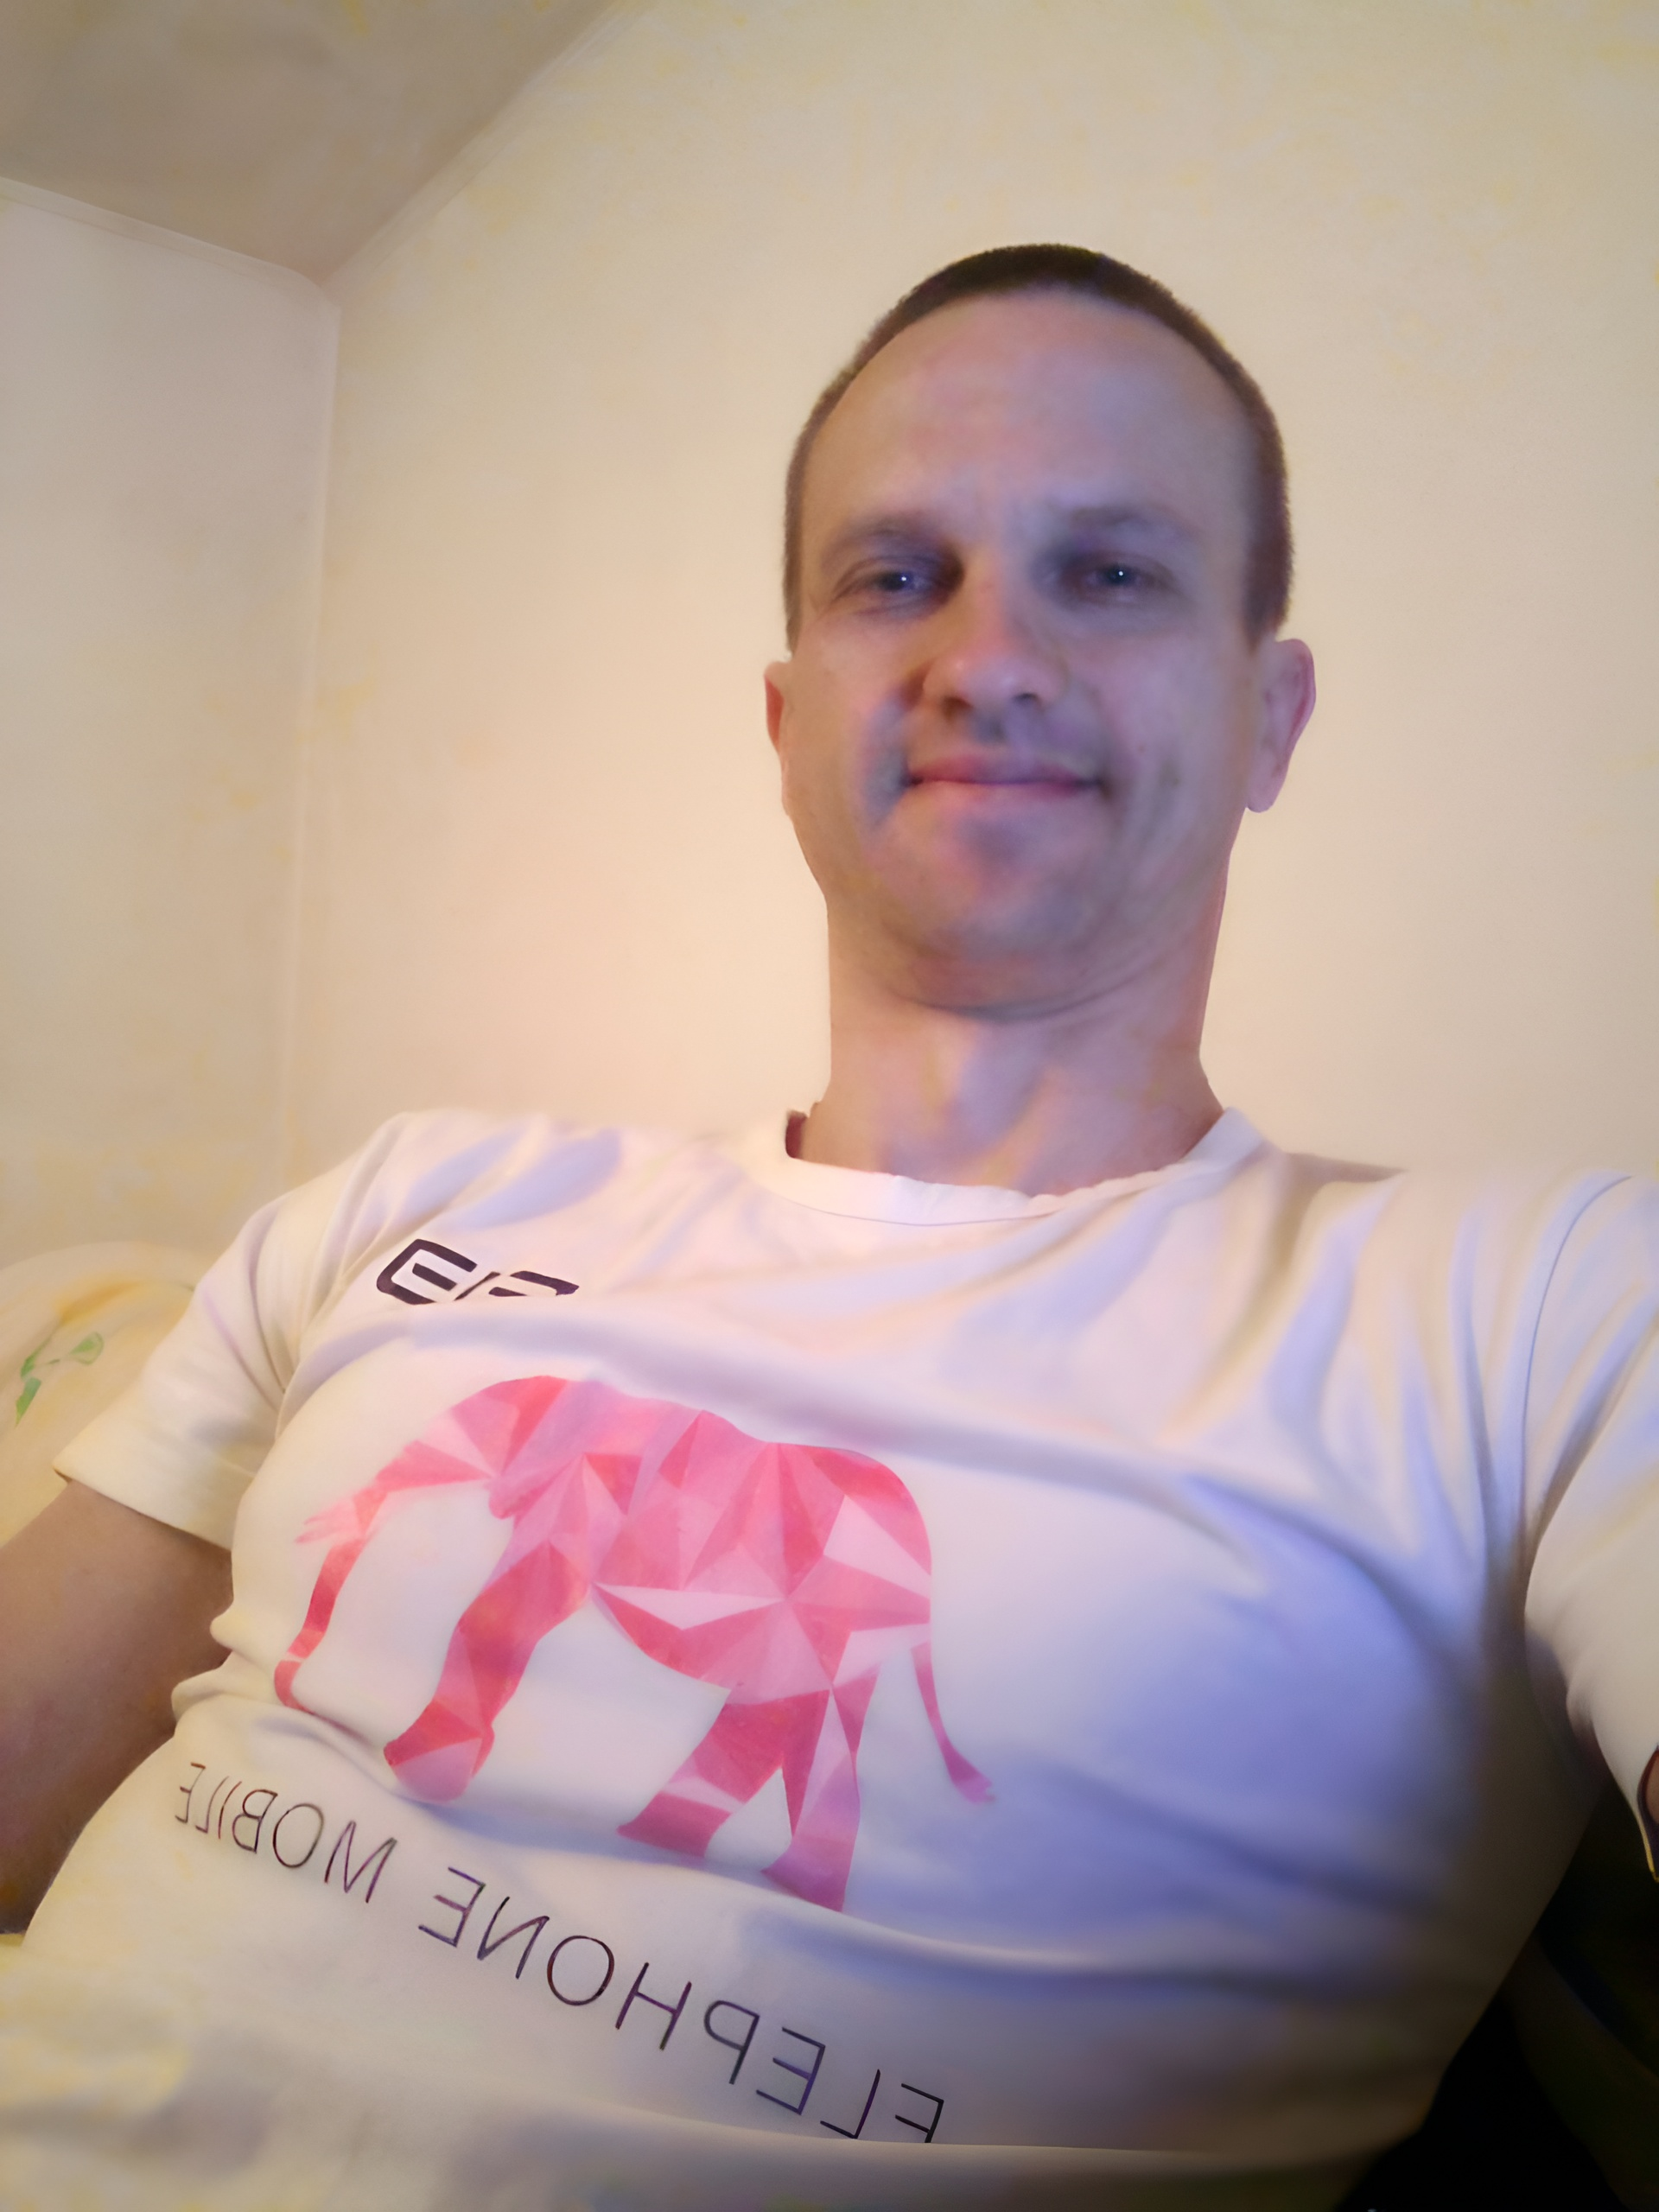 Молодой и красивый мужчина в белой футболке, на которой изображен розовый слон и надпись elephon mobile, сидит вполоборота на диване слегка улыбаясь и смотря прямо.